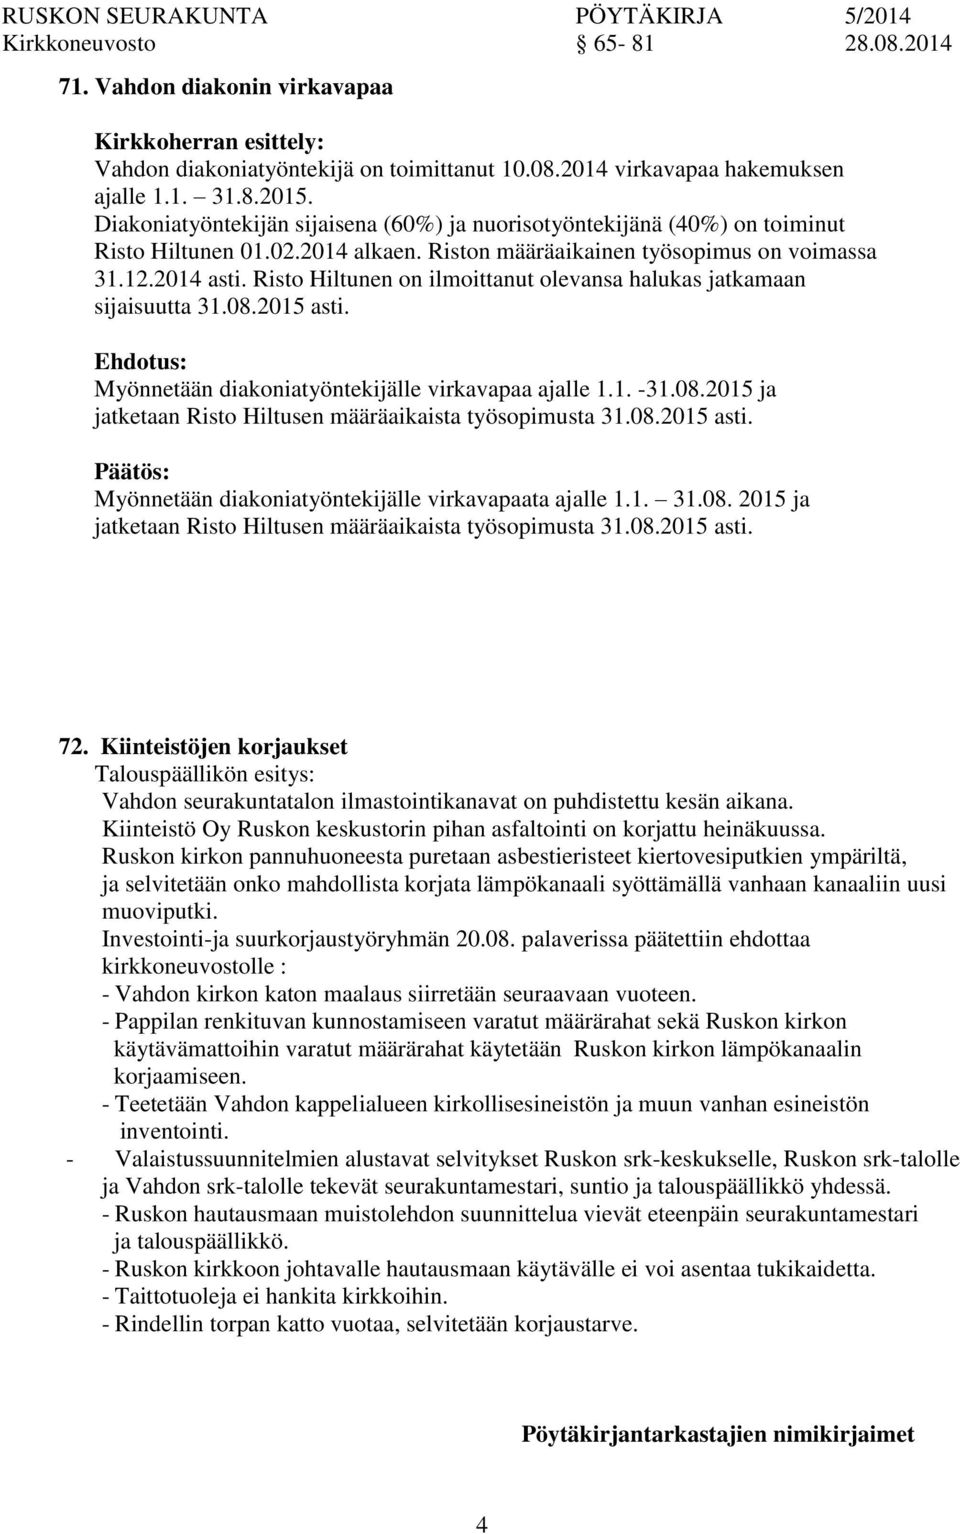 Risto Hiltunen on ilmoittanut olevansa halukas jatkamaan sijaisuutta 31.08.2015 asti. Myönnetään diakoniatyöntekijälle virkavapaa ajalle 1.1. -31.08.2015 ja jatketaan Risto Hiltusen määräaikaista työsopimusta 31.